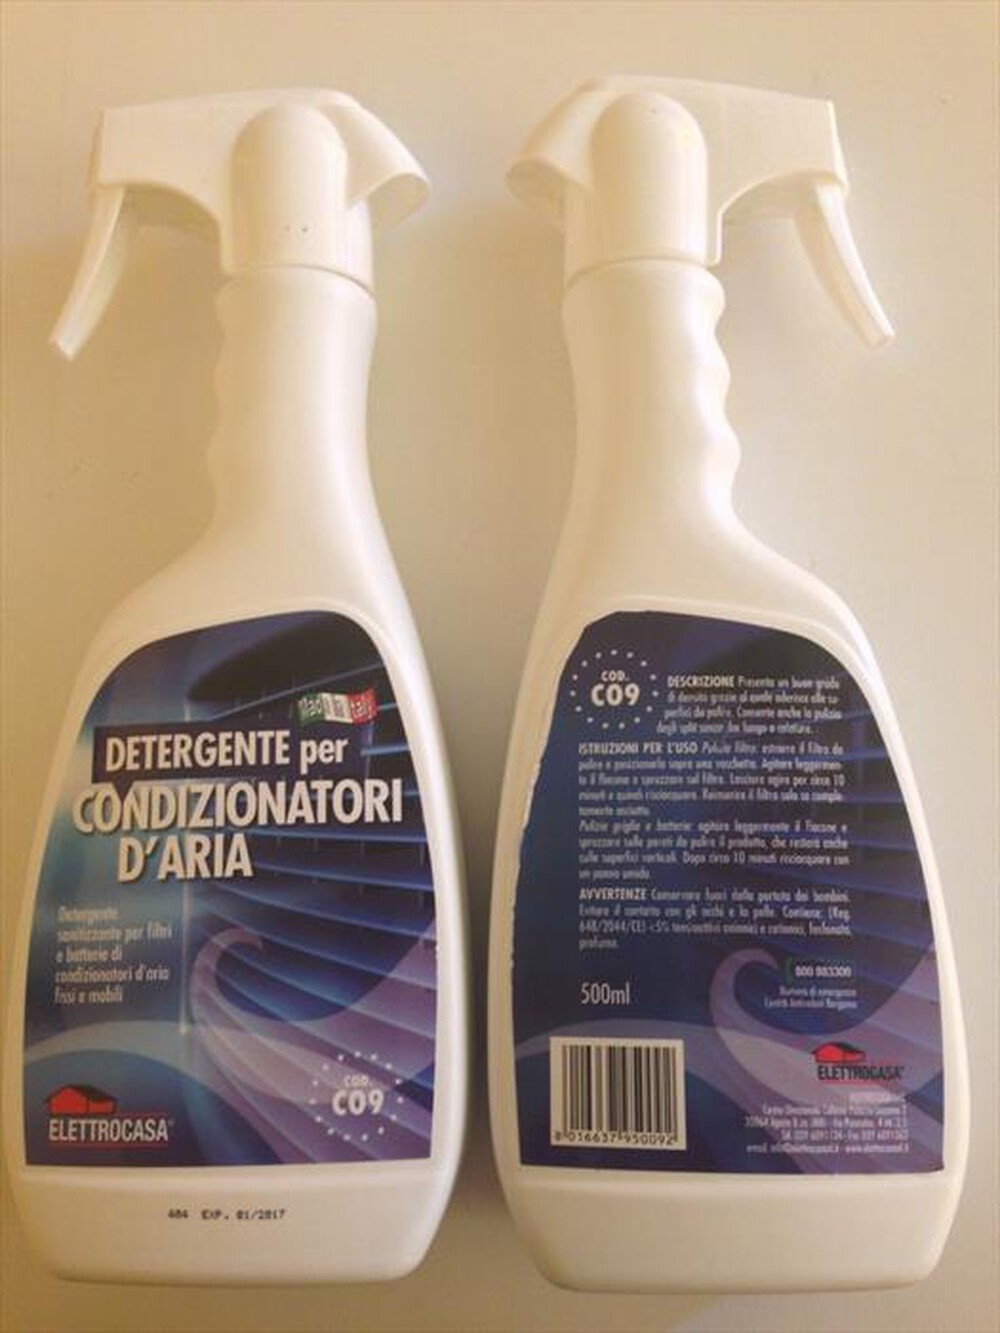 "ELETTROCASA - CO9 - Detergente per condizionatori - "